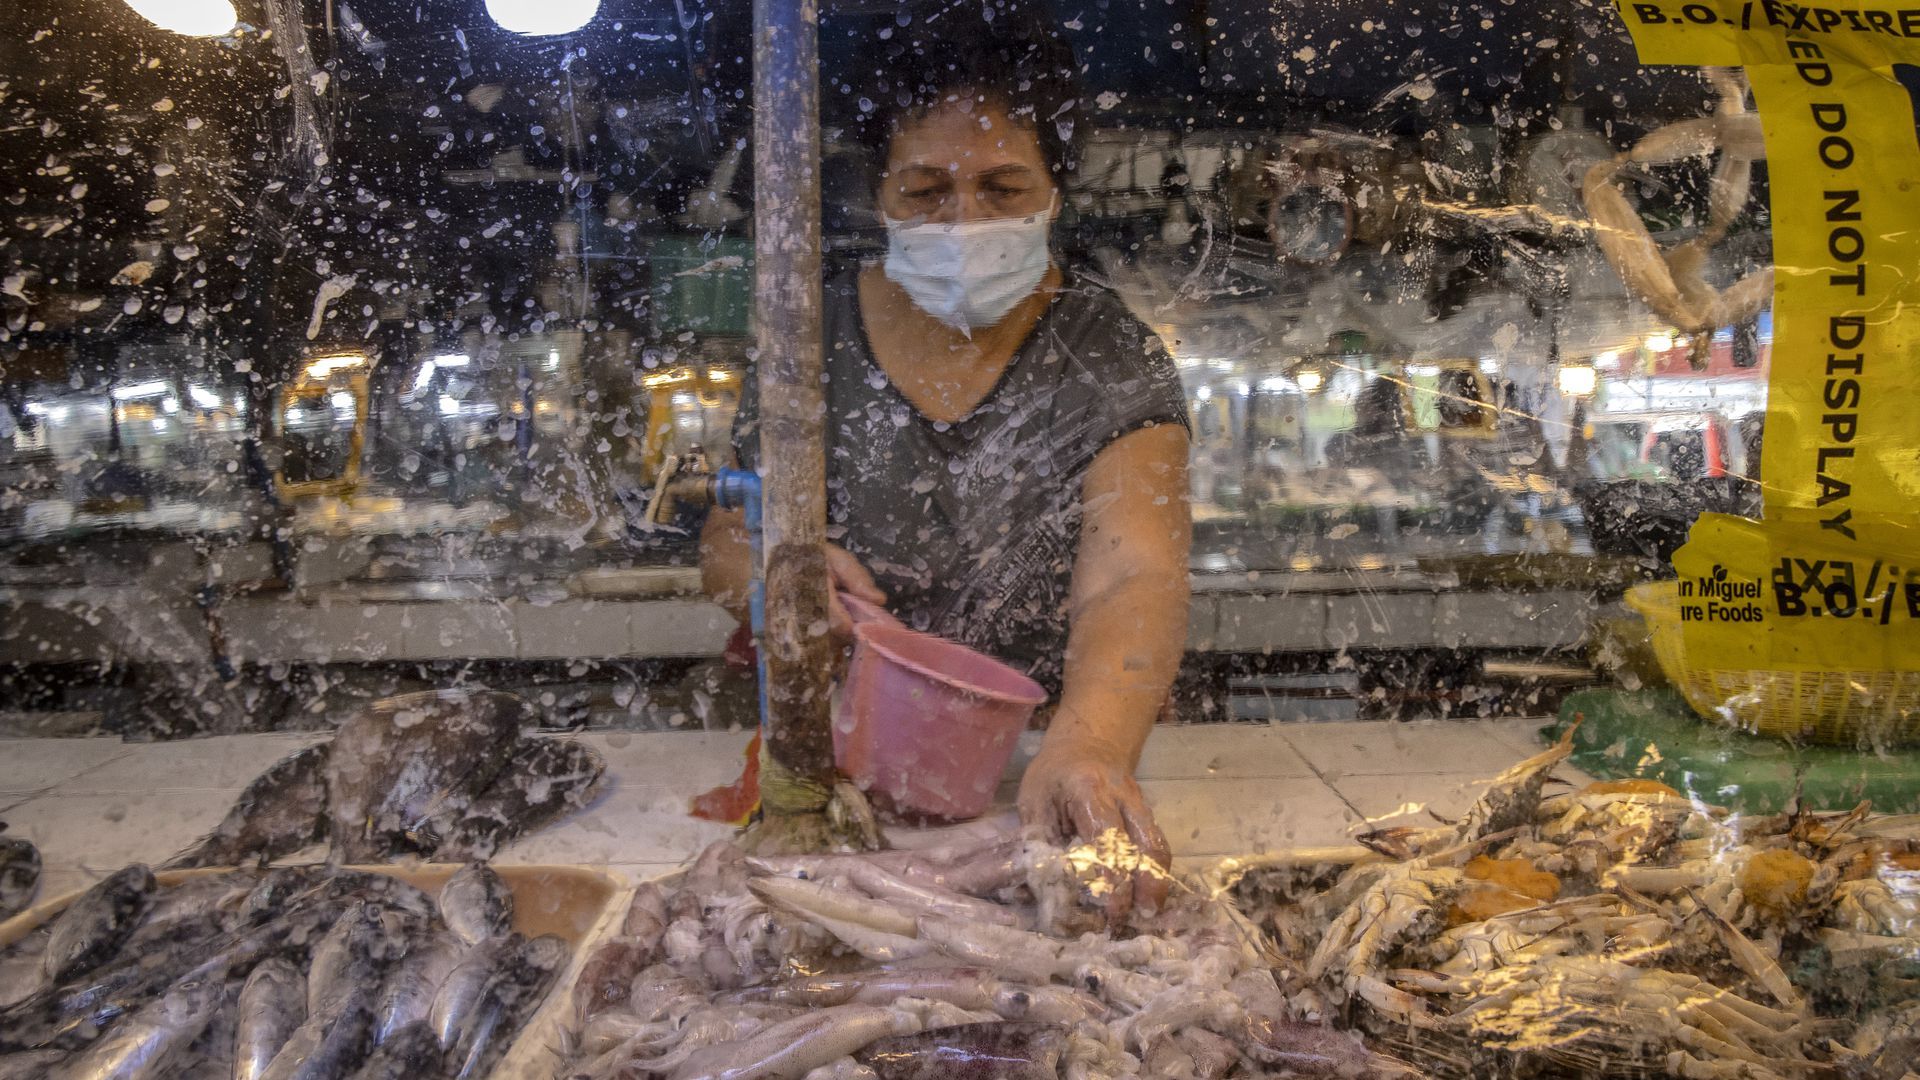 A photo of a wet market in Hong Kong